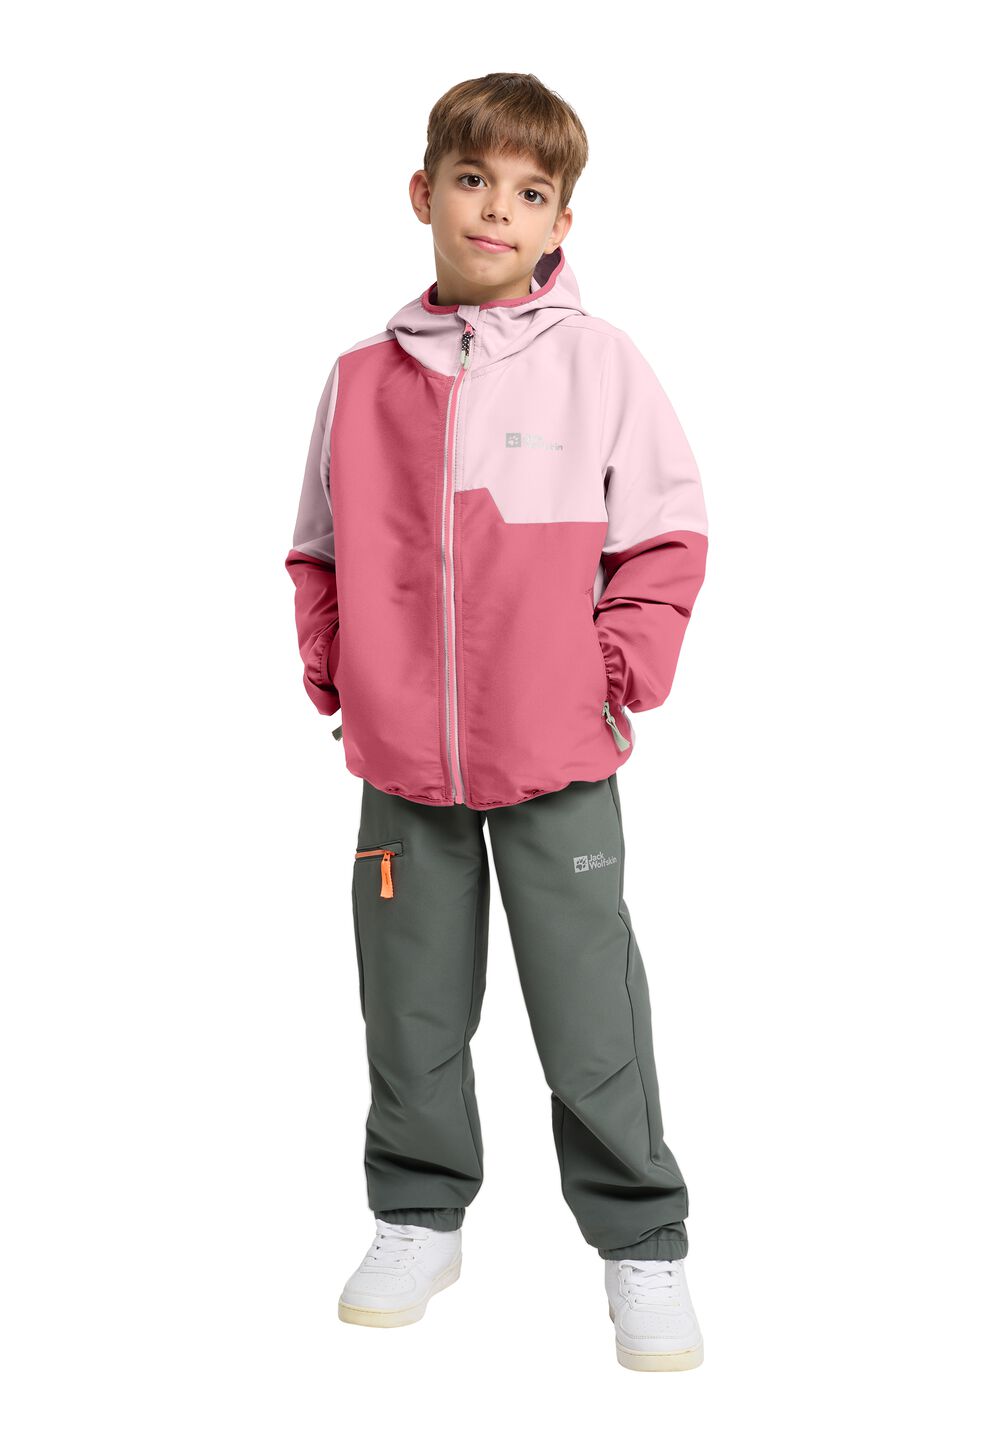 Jack Wolfskin Turbulence Hooded Jacket Kids Softshelljack Kinderen 152 soft pink soft pink